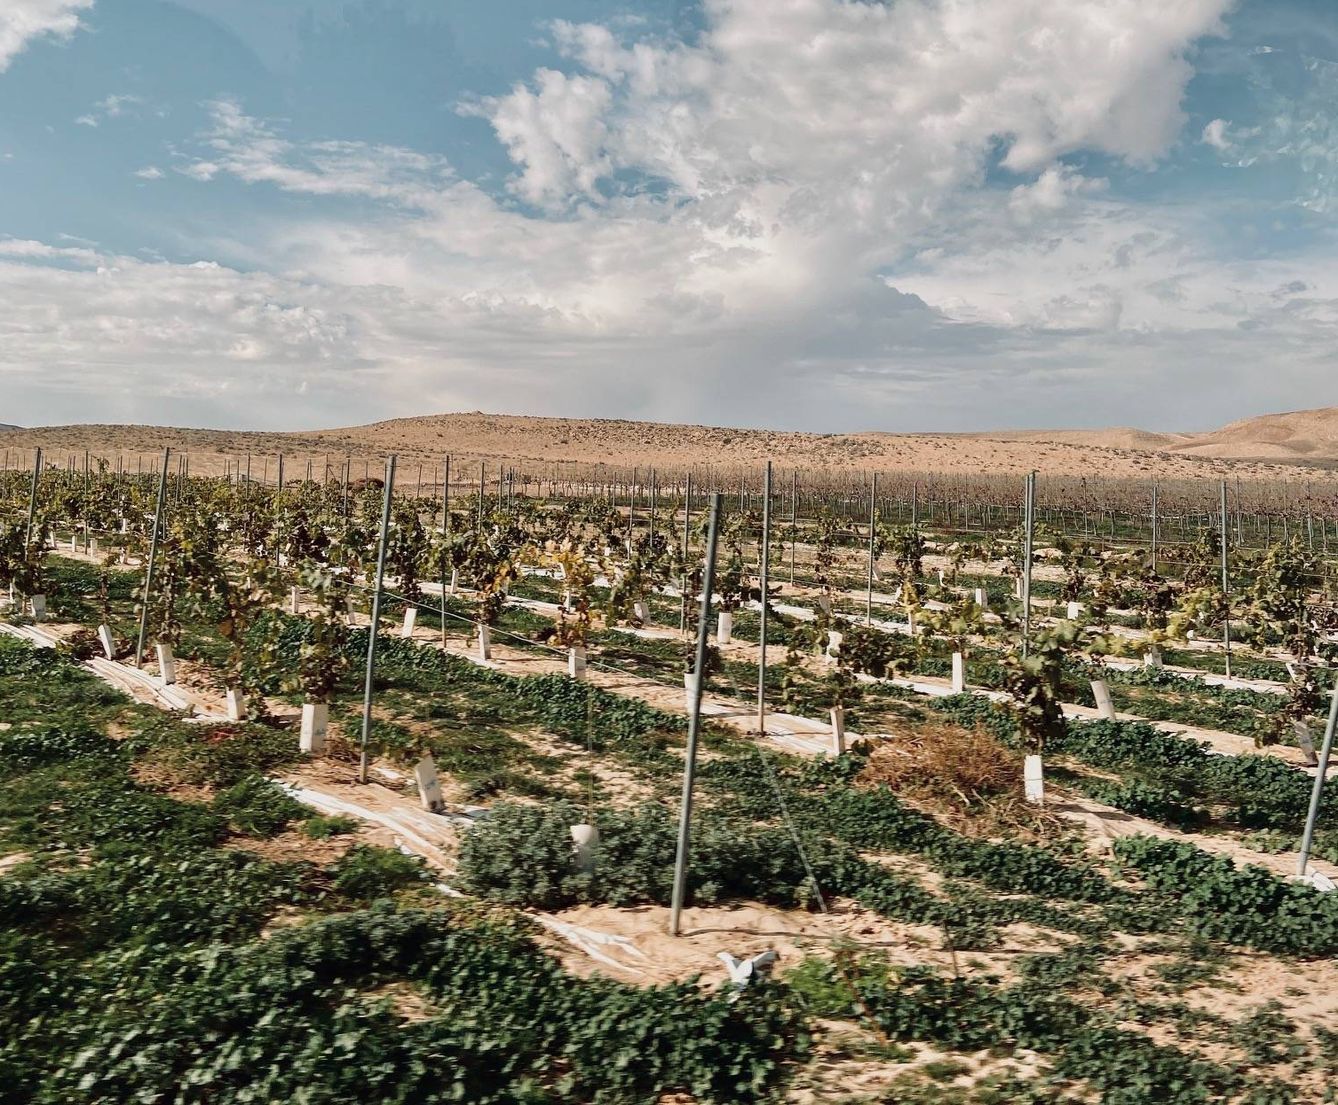   Los viñedos de Nana Winery en pleno desierto. C.S